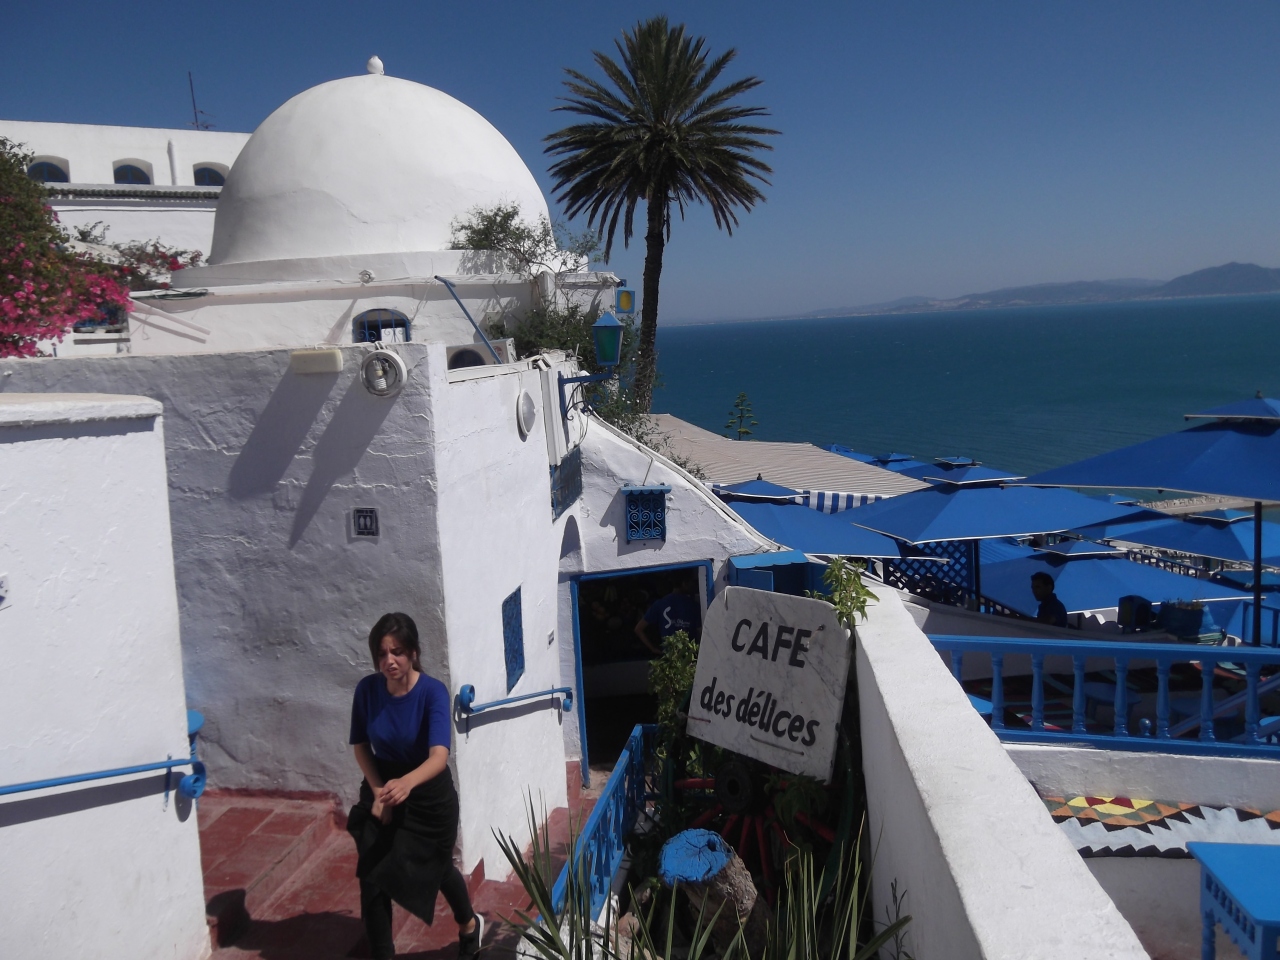 19 ｼﾃﾞｨﾌﾞｻｲﾄﾞ8ｶ国7ﾌﾗｲﾄ ﾊﾞﾙﾄ3国 ﾁｭﾆｽ 4 ﾜﾙｼｬﾜ ｲｽﾀﾝﾌﾞｰﾙ ｼﾝｶﾞﾎﾟｰﾙ ﾌﾗﾝｸﾌﾙﾄ チュニス チュニジア の旅行記 ブログ By さすらいの旅人マーさん フォートラベル